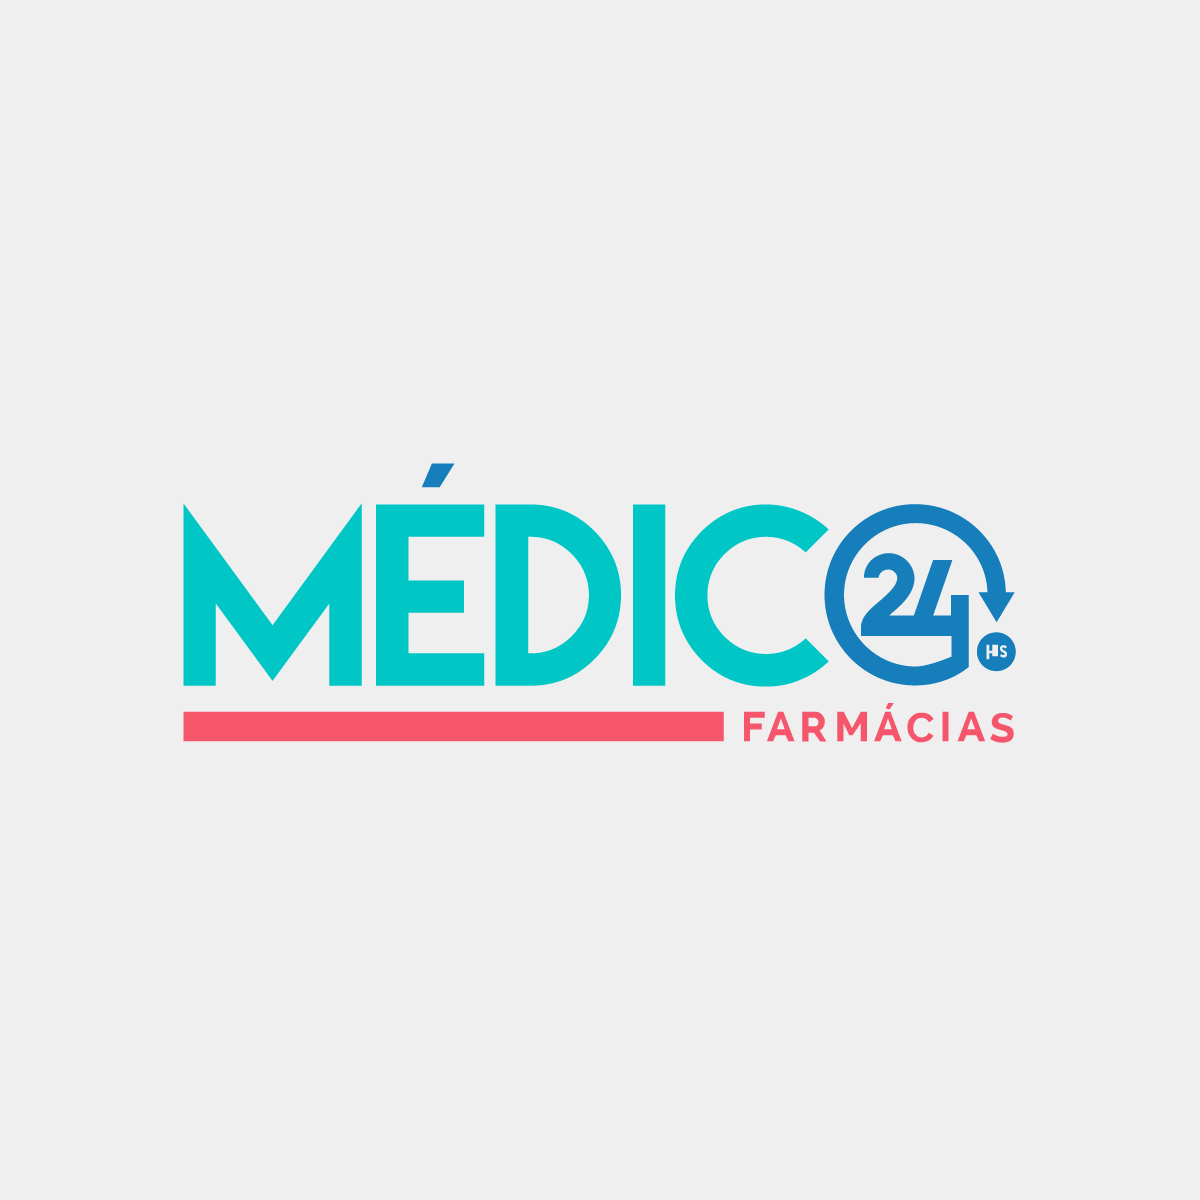 https://www.brasiltelemedicina.com.br/wp-content/uploads/2016/07/Produtos_Medico24hs_Farmácias-1200x1200.png